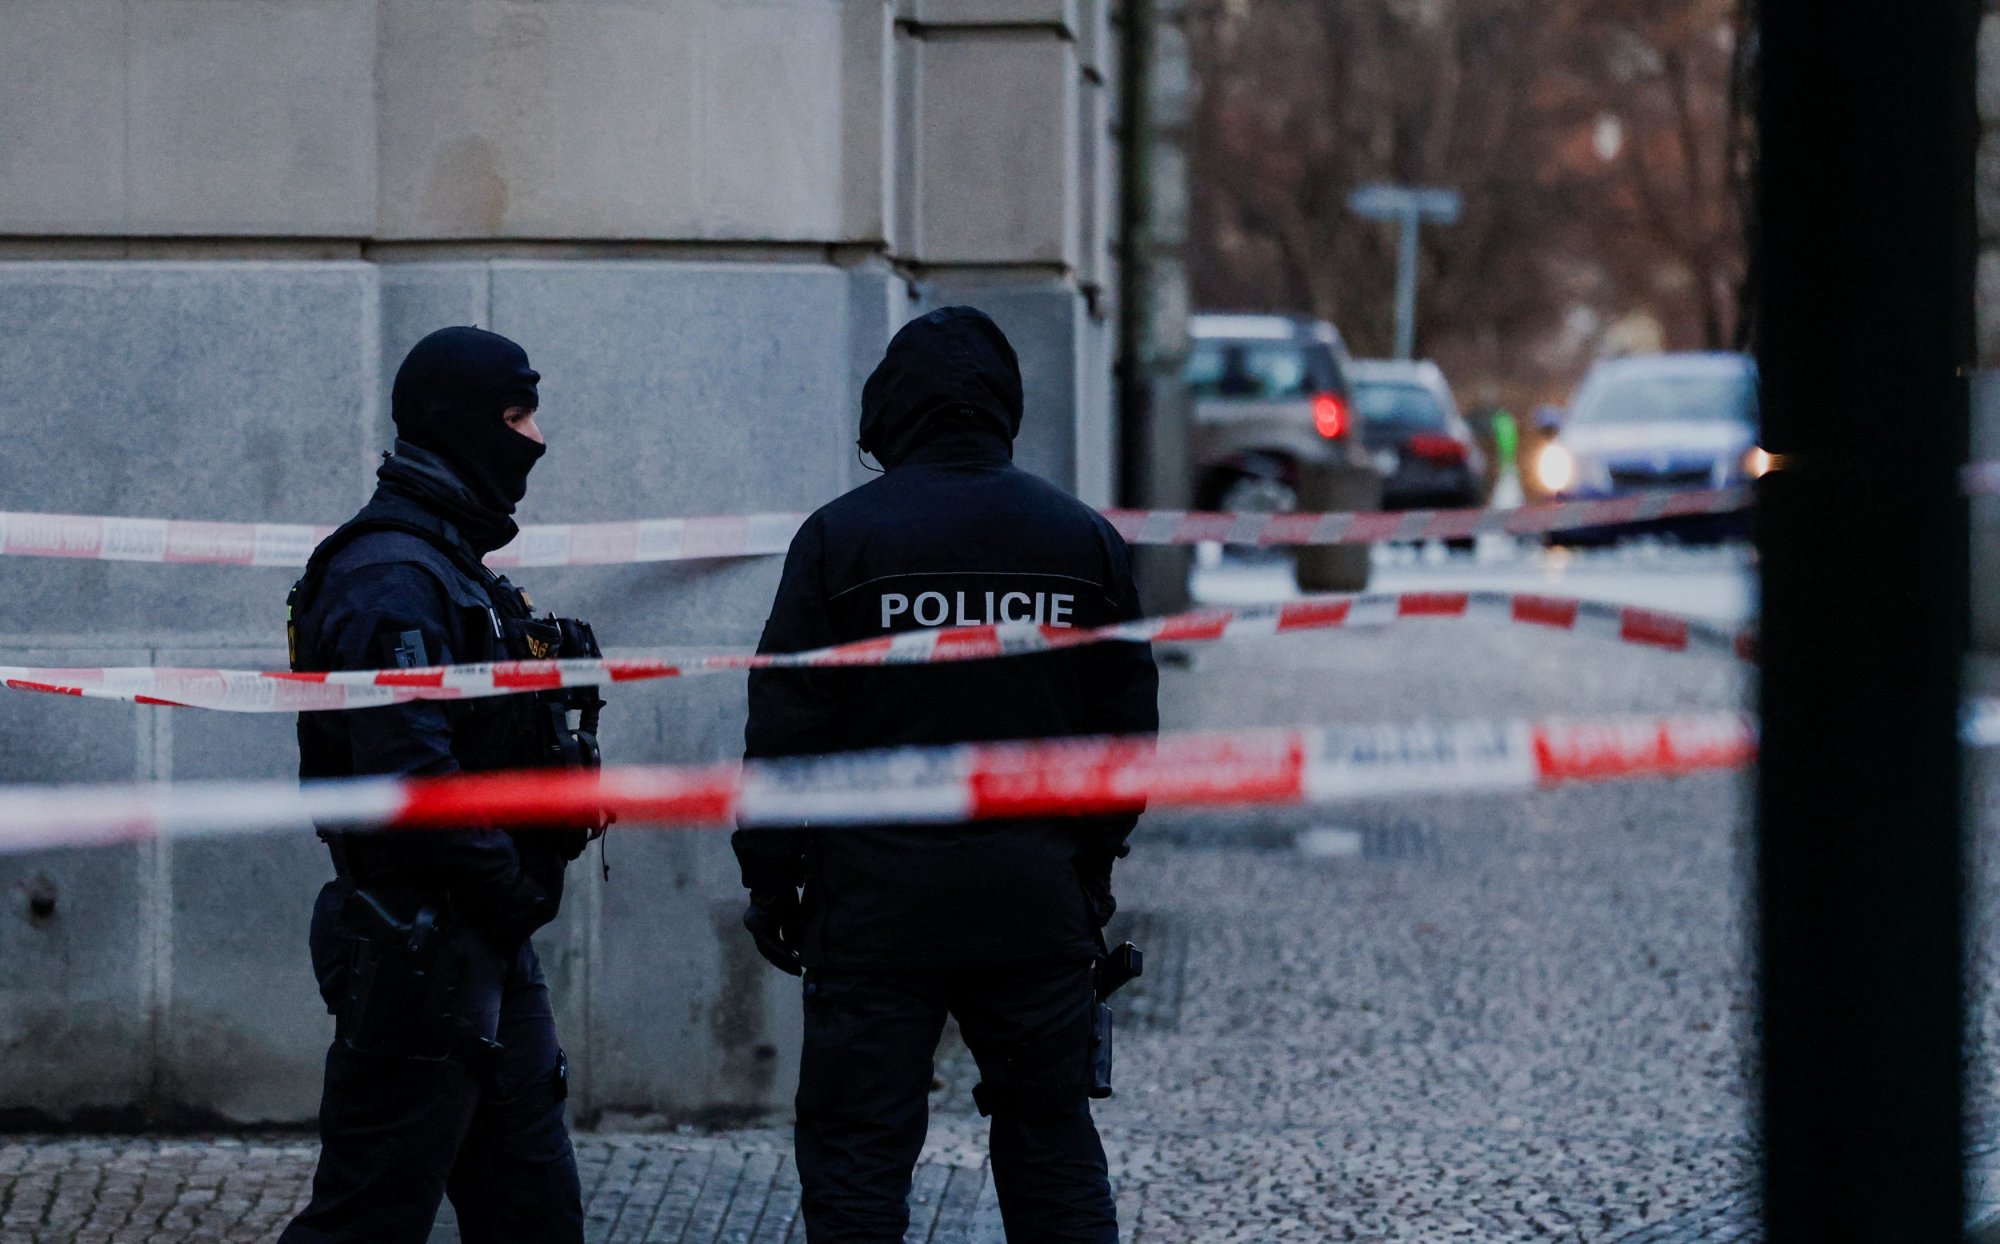 Μακελειό στην Πράγα: «Τον βλέπω είναι εκεί! Φοράει μαύρα...» - Οι συγκλονιστικοί διάλογοι μεταξύ των αστυνομικών